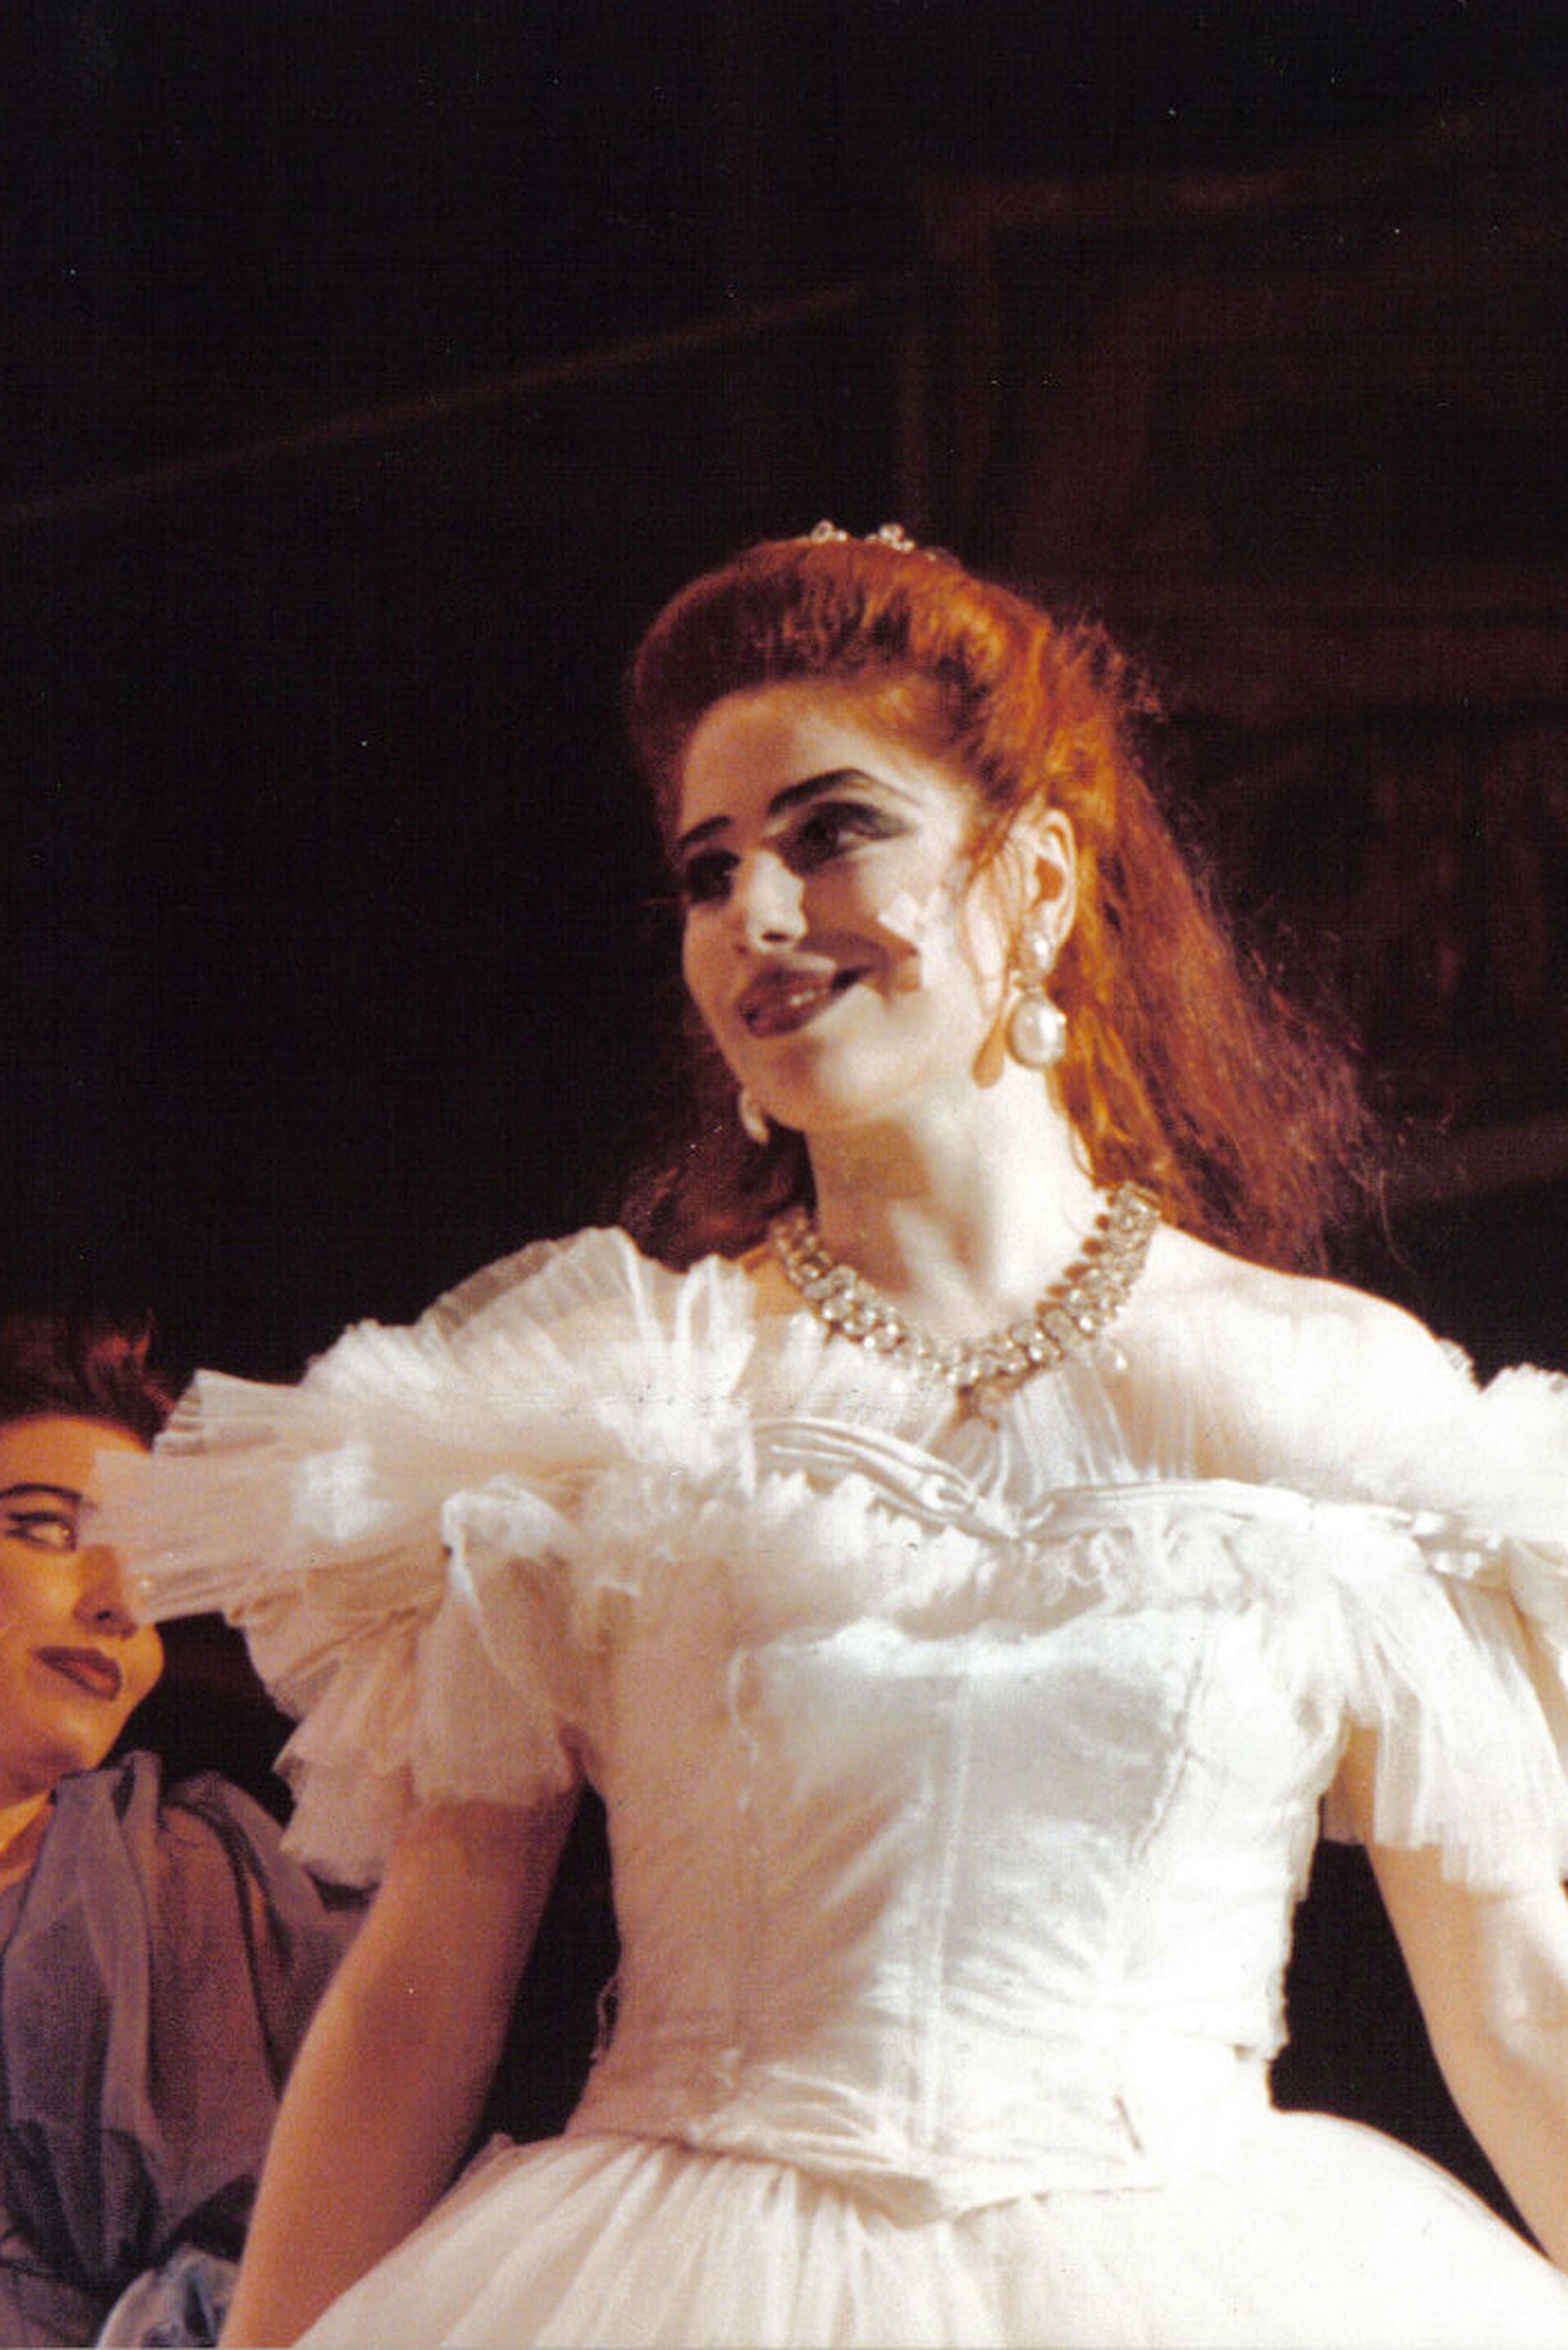 Alejandra Radano debutó en el musical haciendo el papel de reparto Ninette, para luego ser una de las tantas Lucy, en sucesivas temporadas